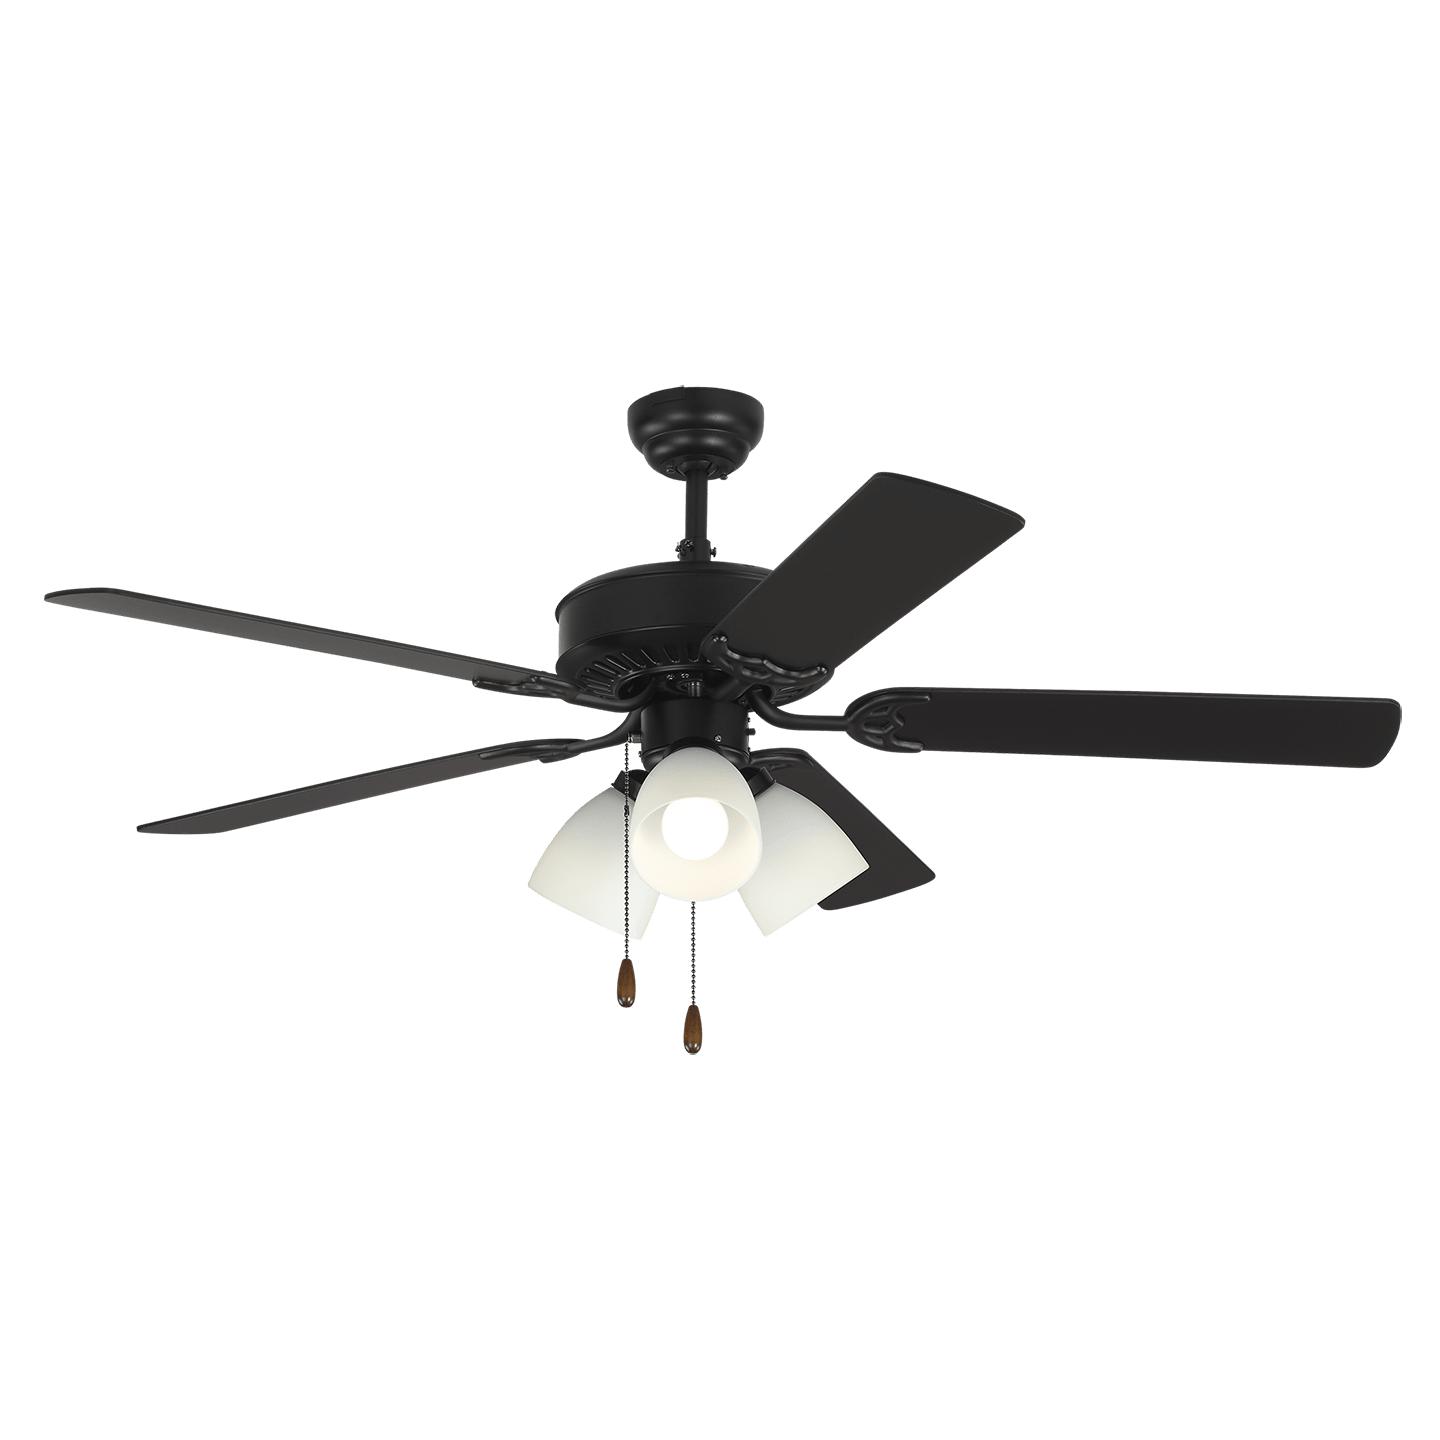 Купить Потолочный вентилятор Haven 52" LED 3 Ceiling Fan в интернет-магазине roooms.ru